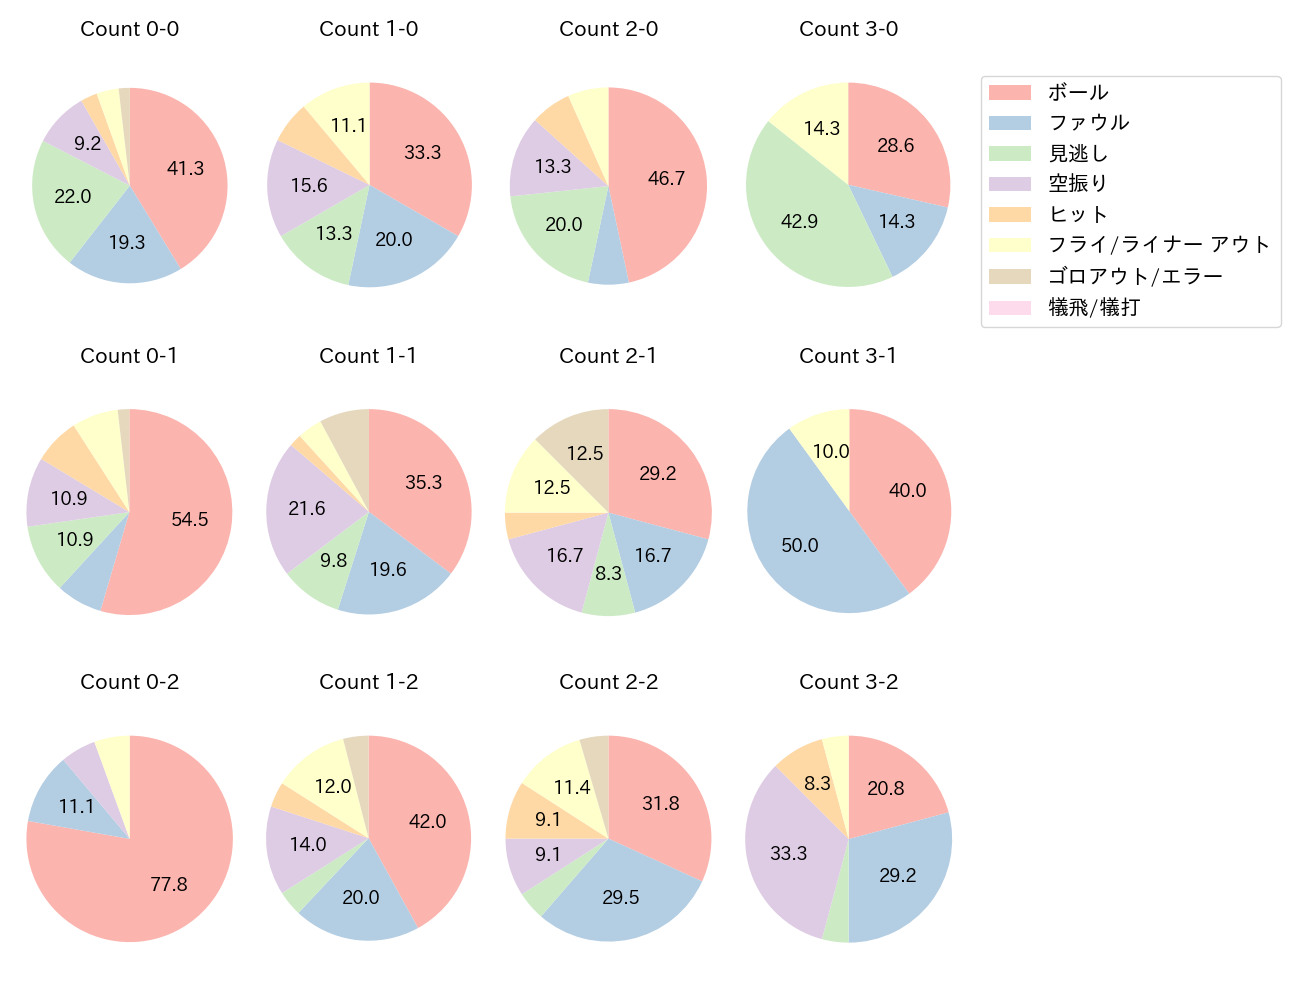 佐藤 輝明の球数分布(2022年8月)